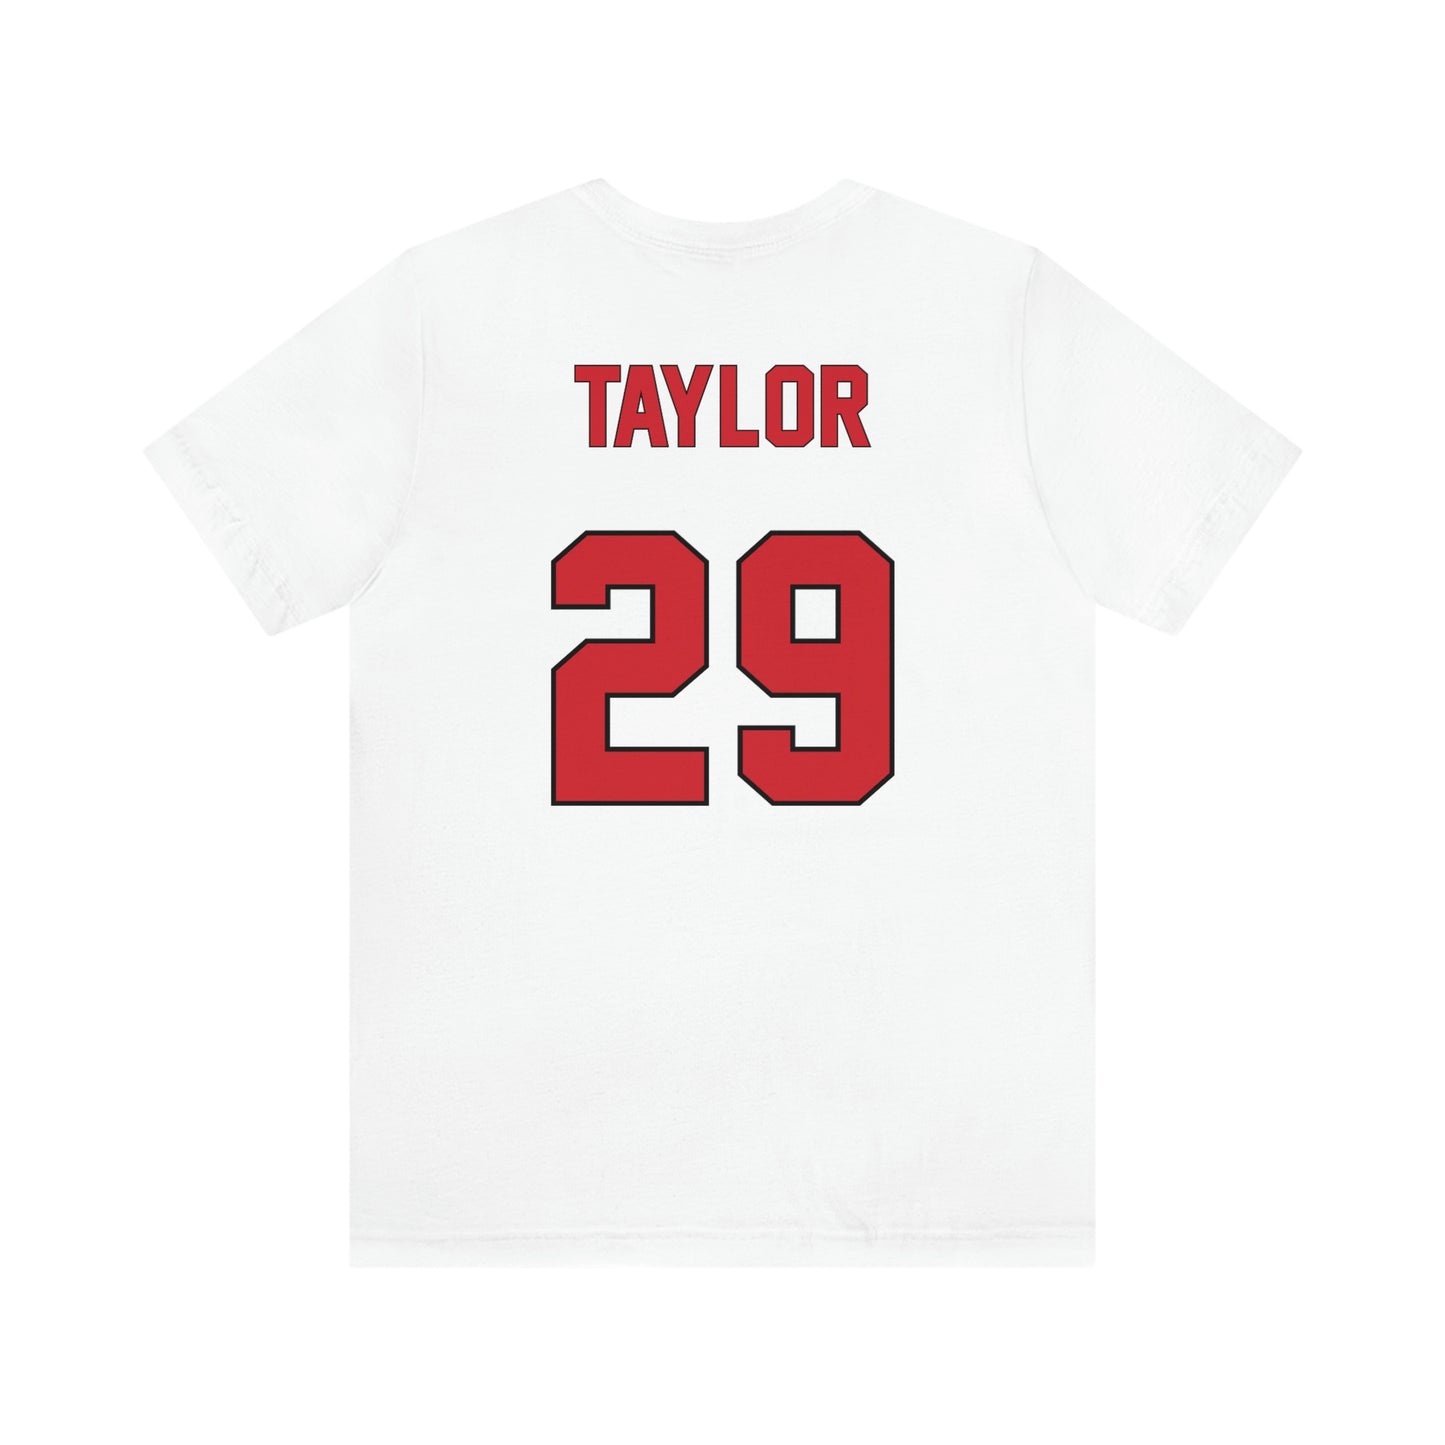 Tate Taylor Unisex Jersey Shirt